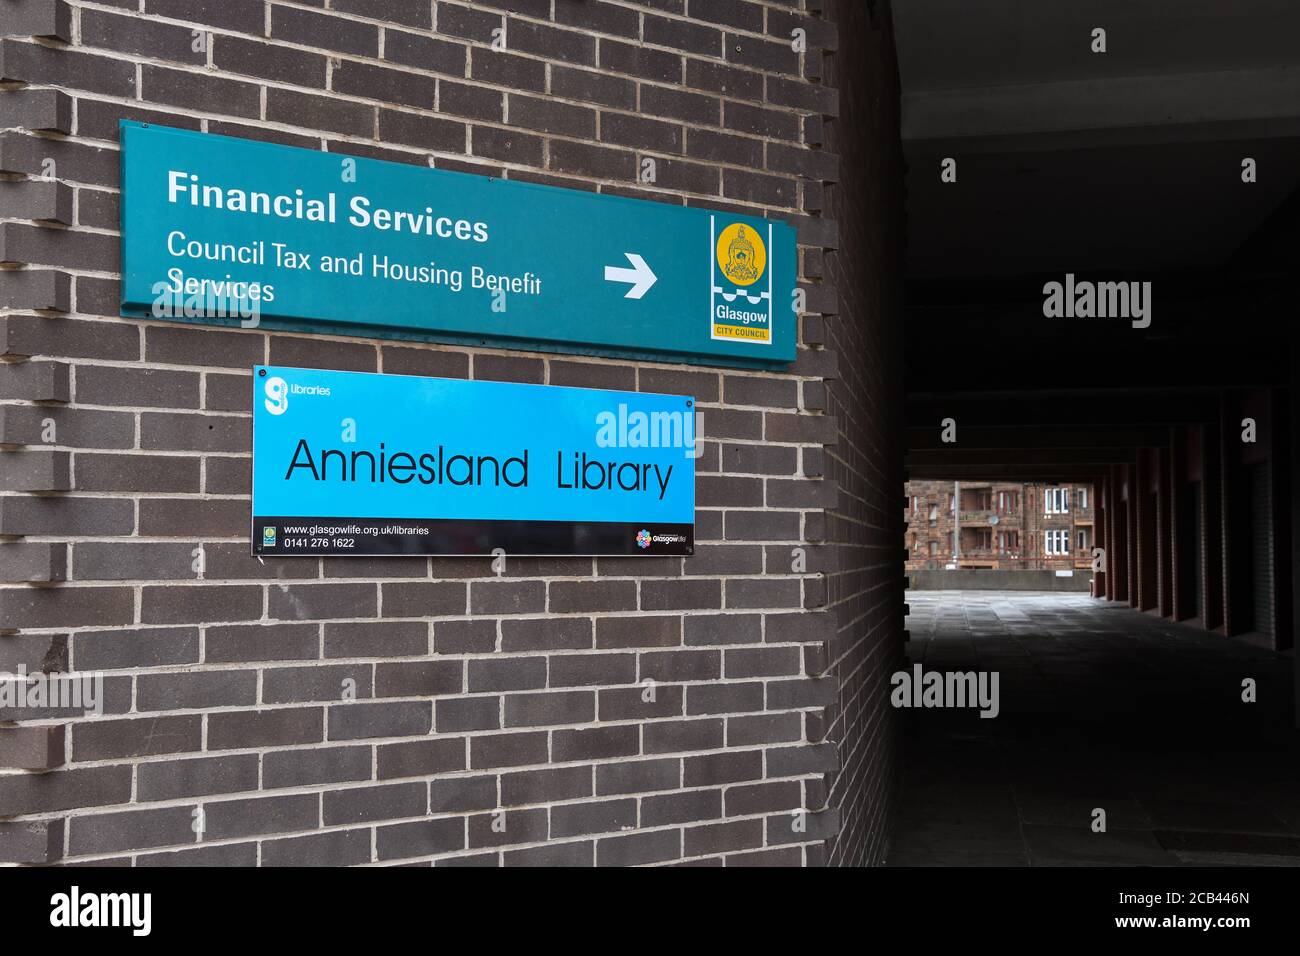 Glasgow City Council Financial Services unterzeichnen bei Anniesland Library for Council Tax and Housing Benefit Services, Anniesland Court, Glasgow, Schottland Stockfoto